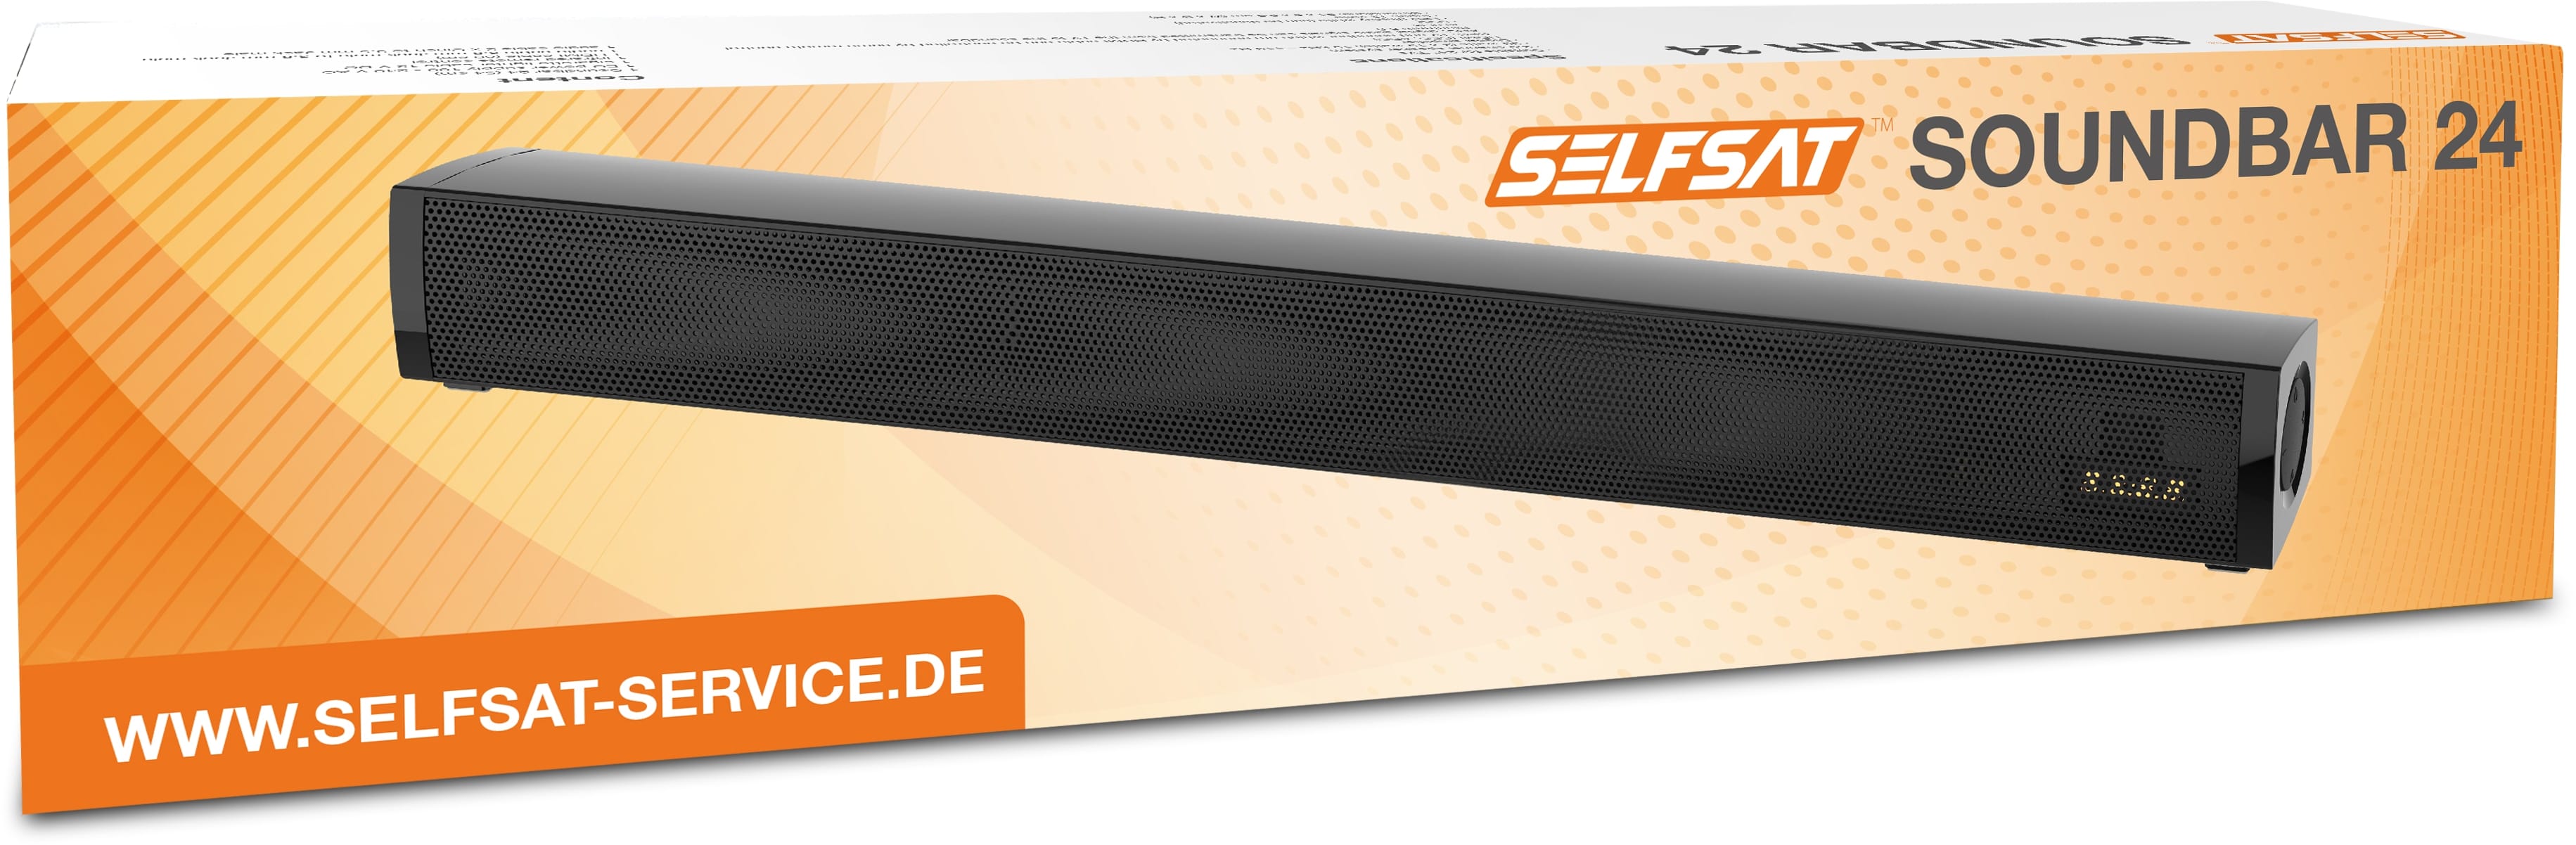 SELFSAT Soundbar 24, 12/230 V, 30 W, schwarz